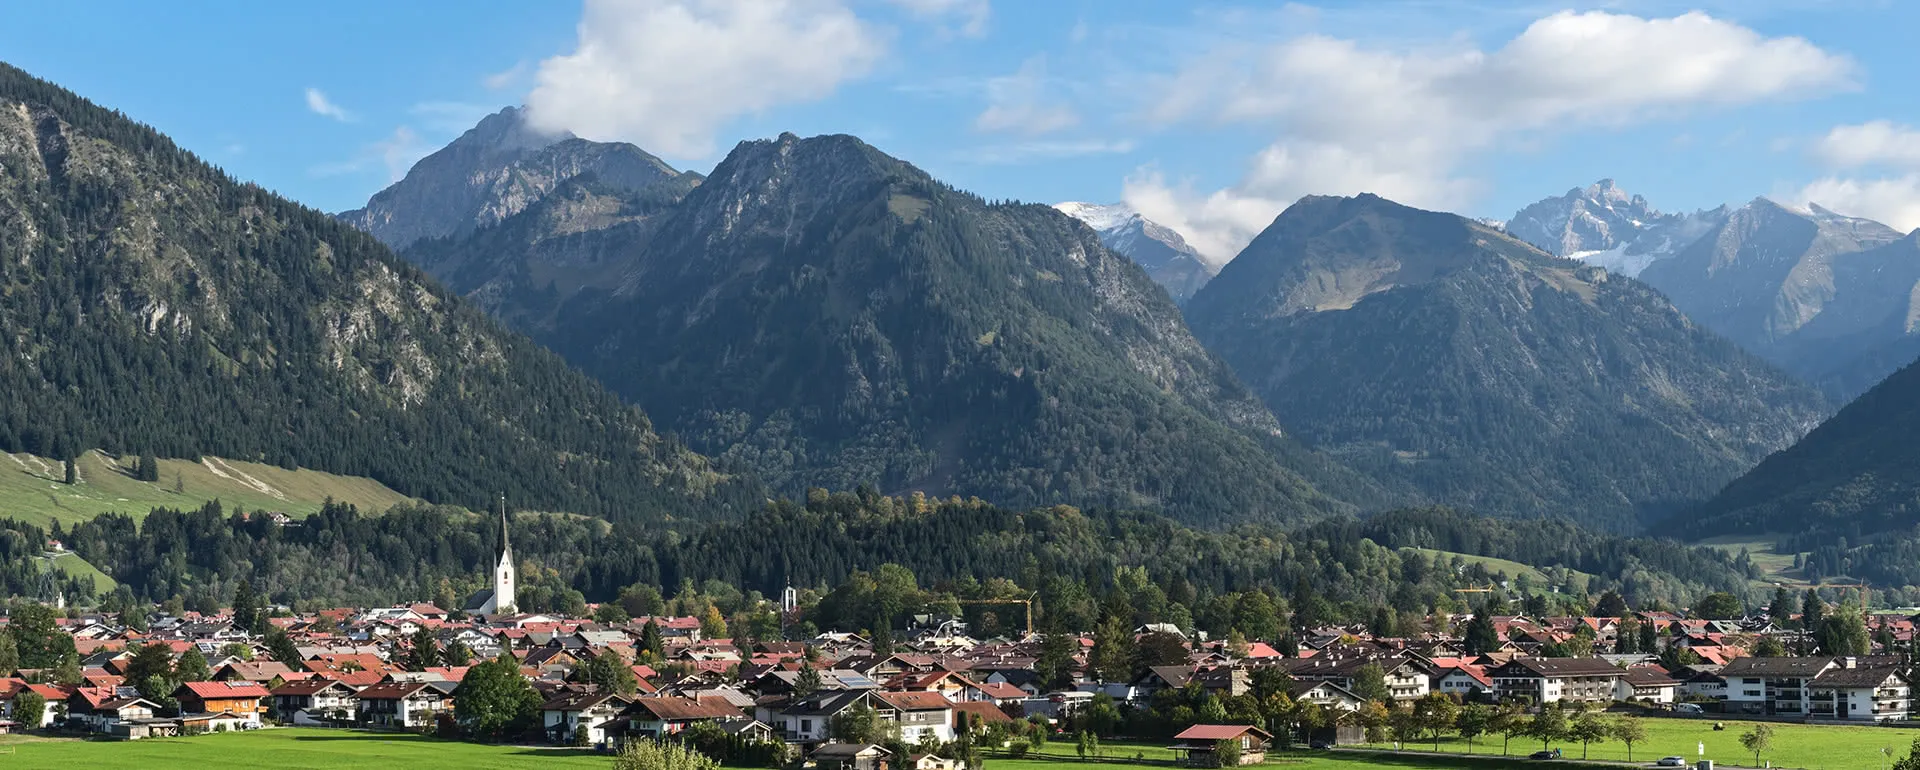 Oberstdorf Panorama Bild